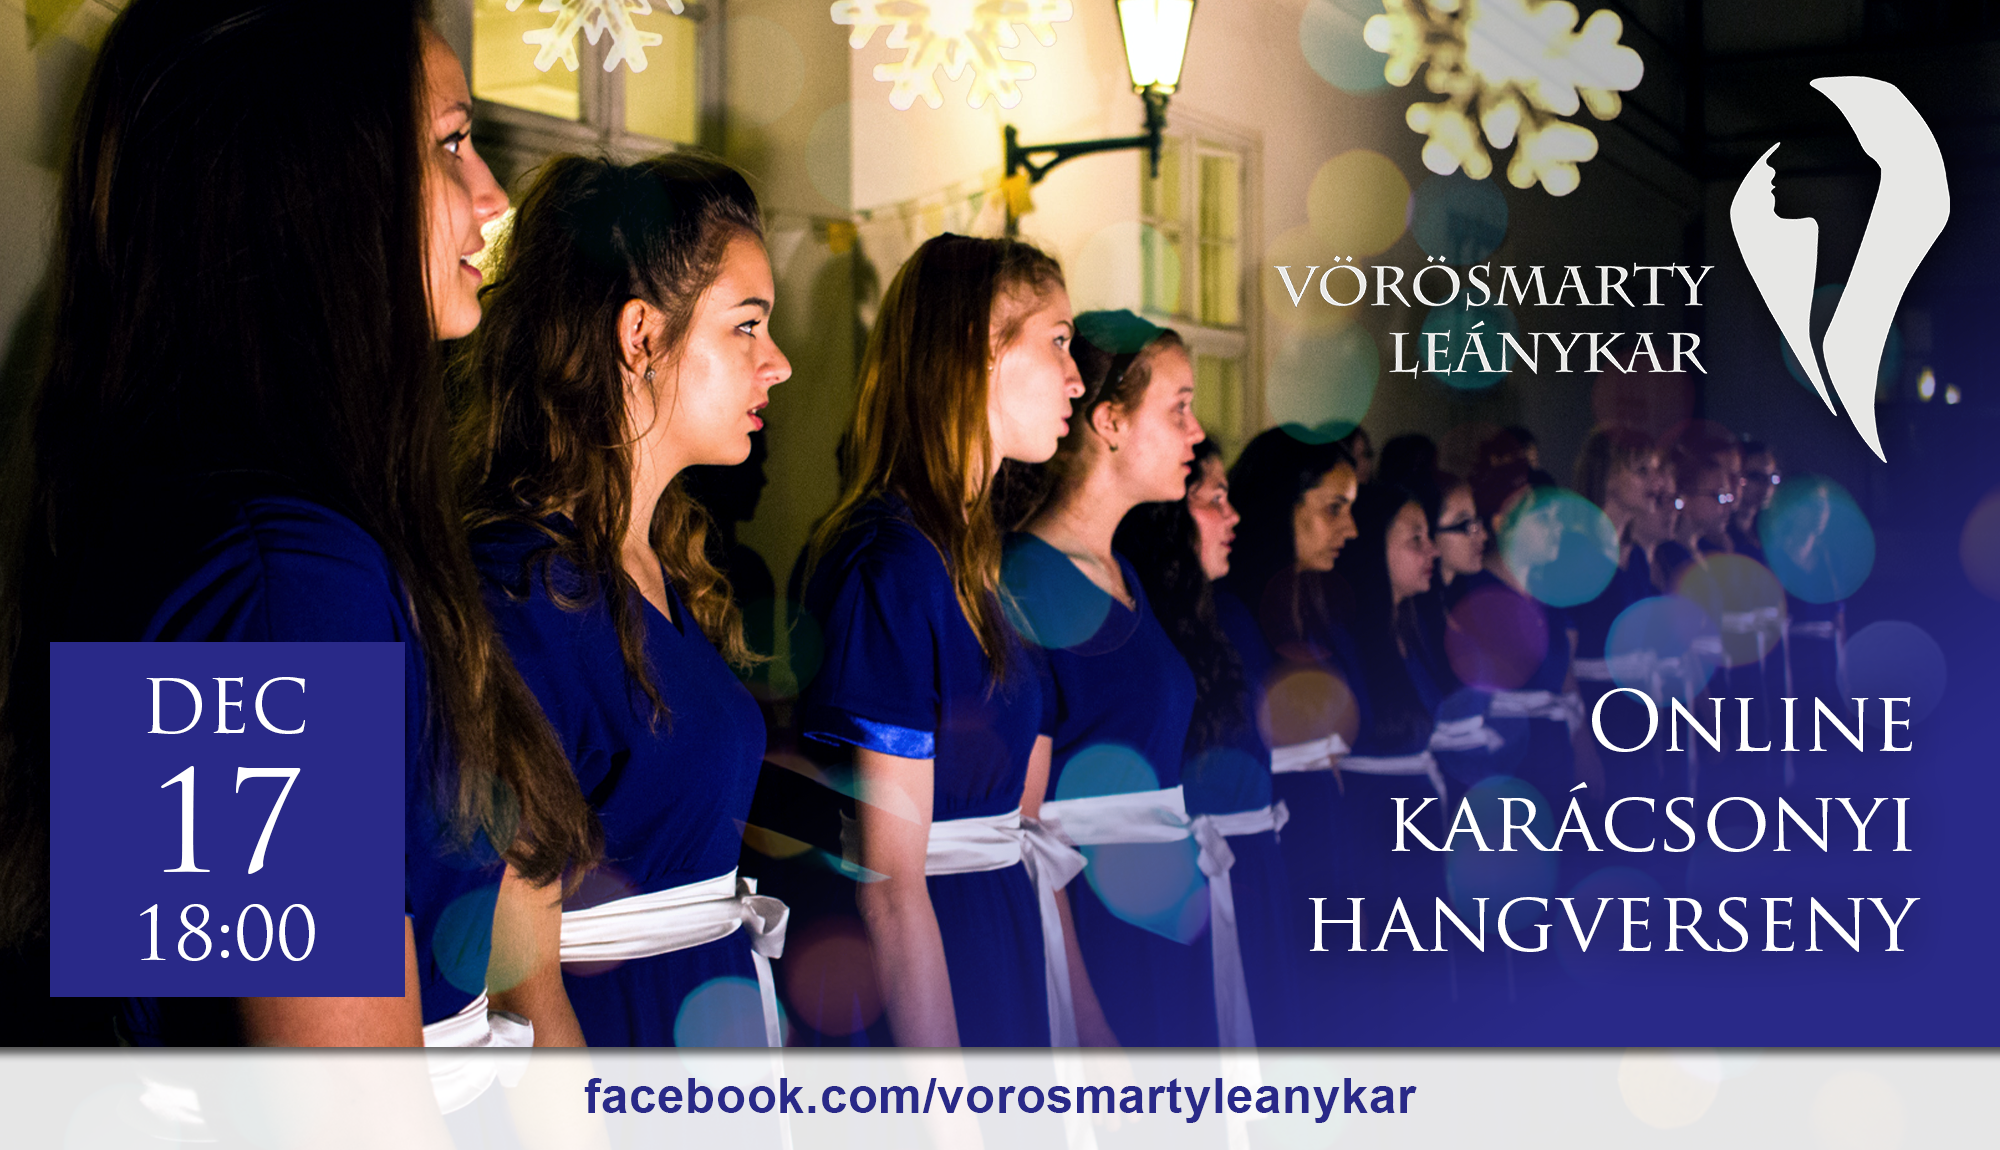 Vorosmarty Leanykar online karacsonyi hangverseny